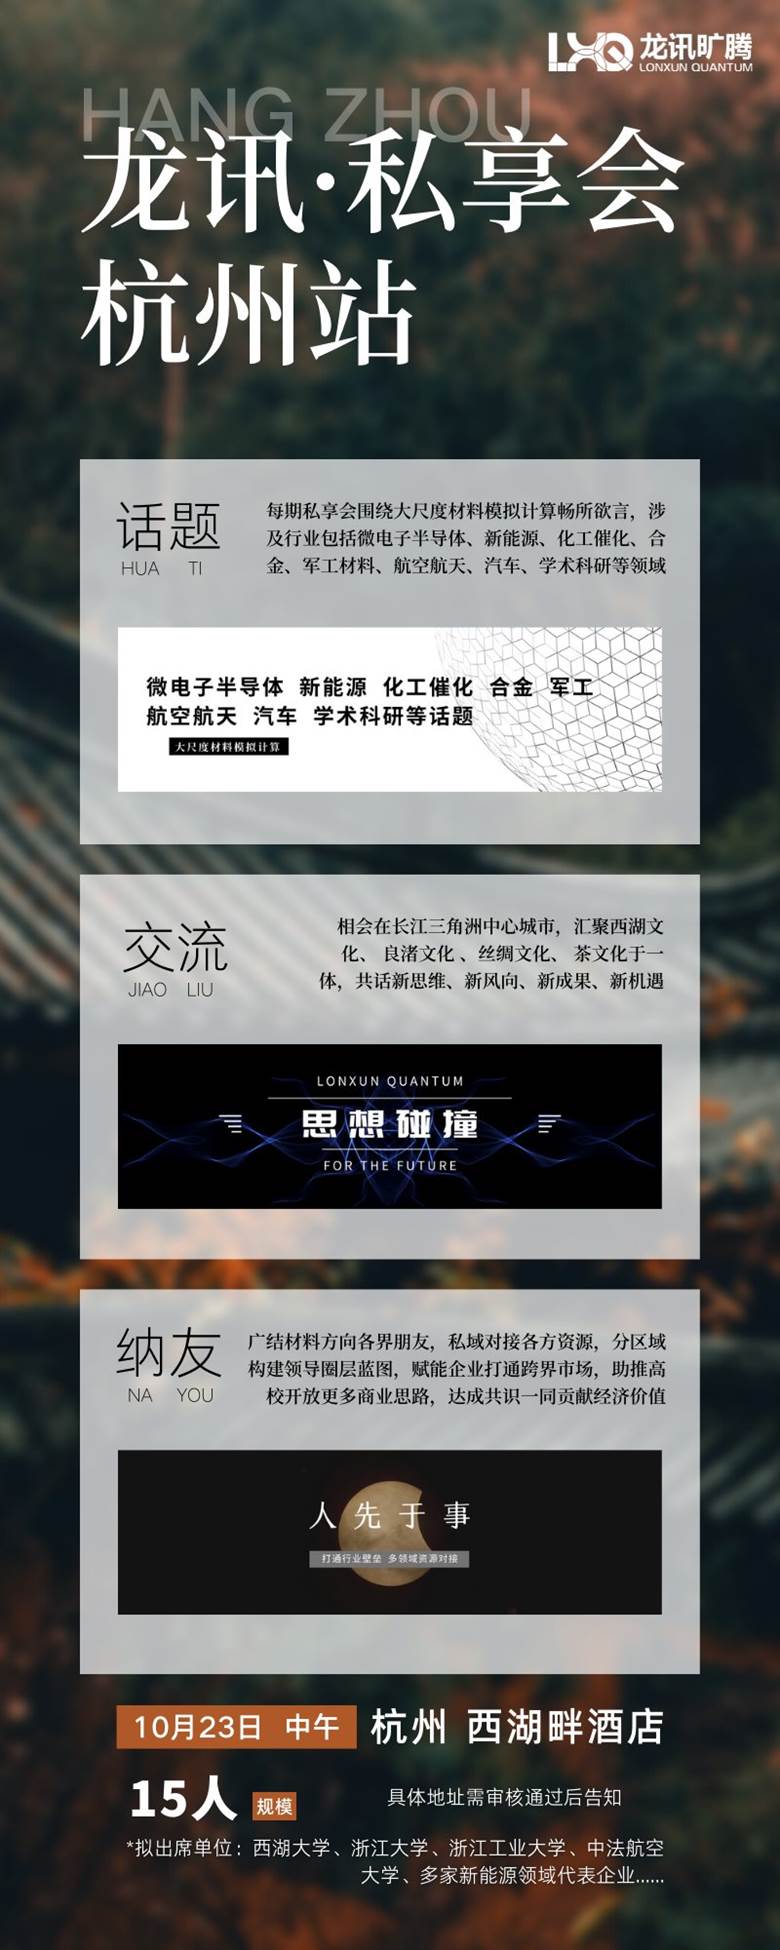 绿褐色文化旅游杭州大标题旅游宣传中文信息图表 (1).png